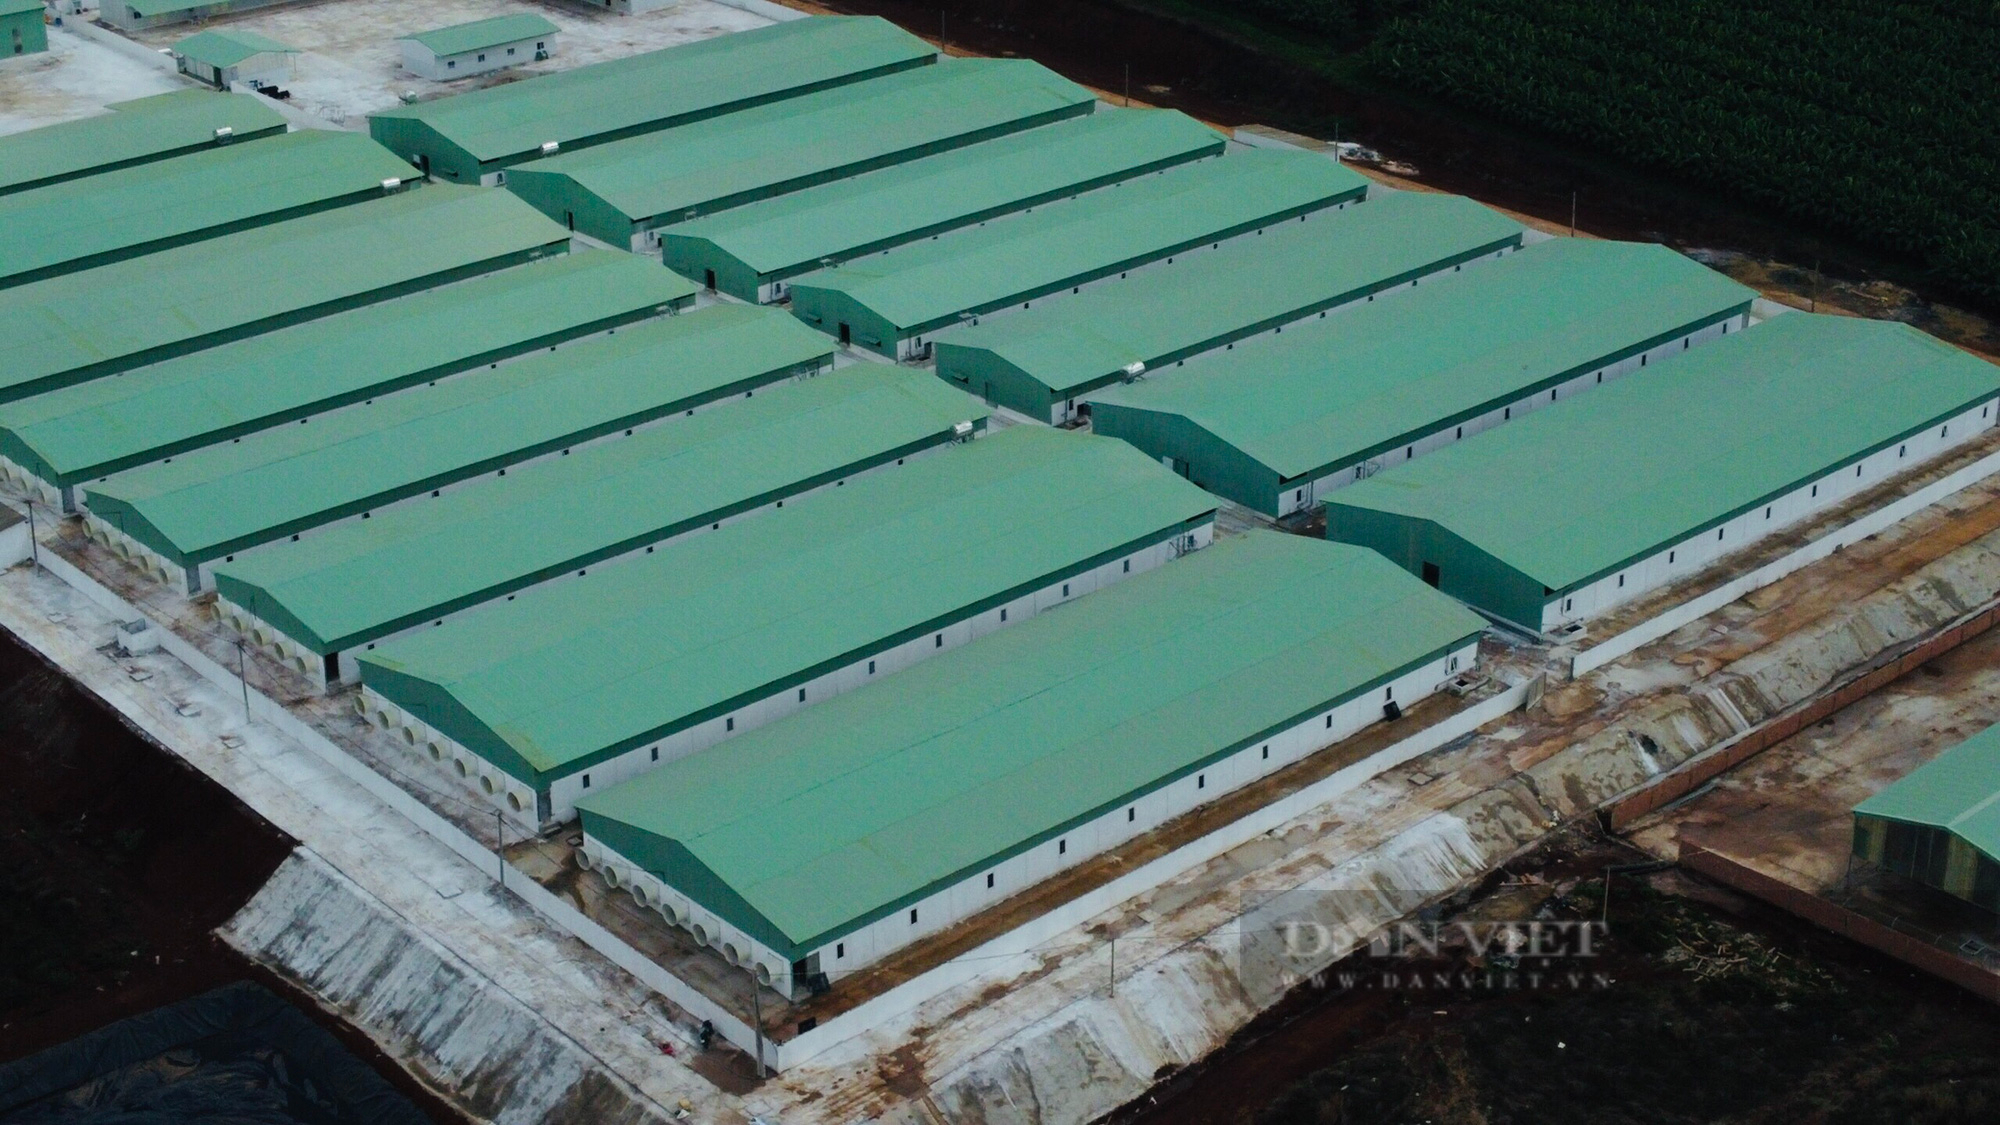 Bất chấp quy định, Công ty Cổ phần gia súc Lơ Pang xây dựng trại heo trái phép gần 100 tỷ đồng - Ảnh 2.